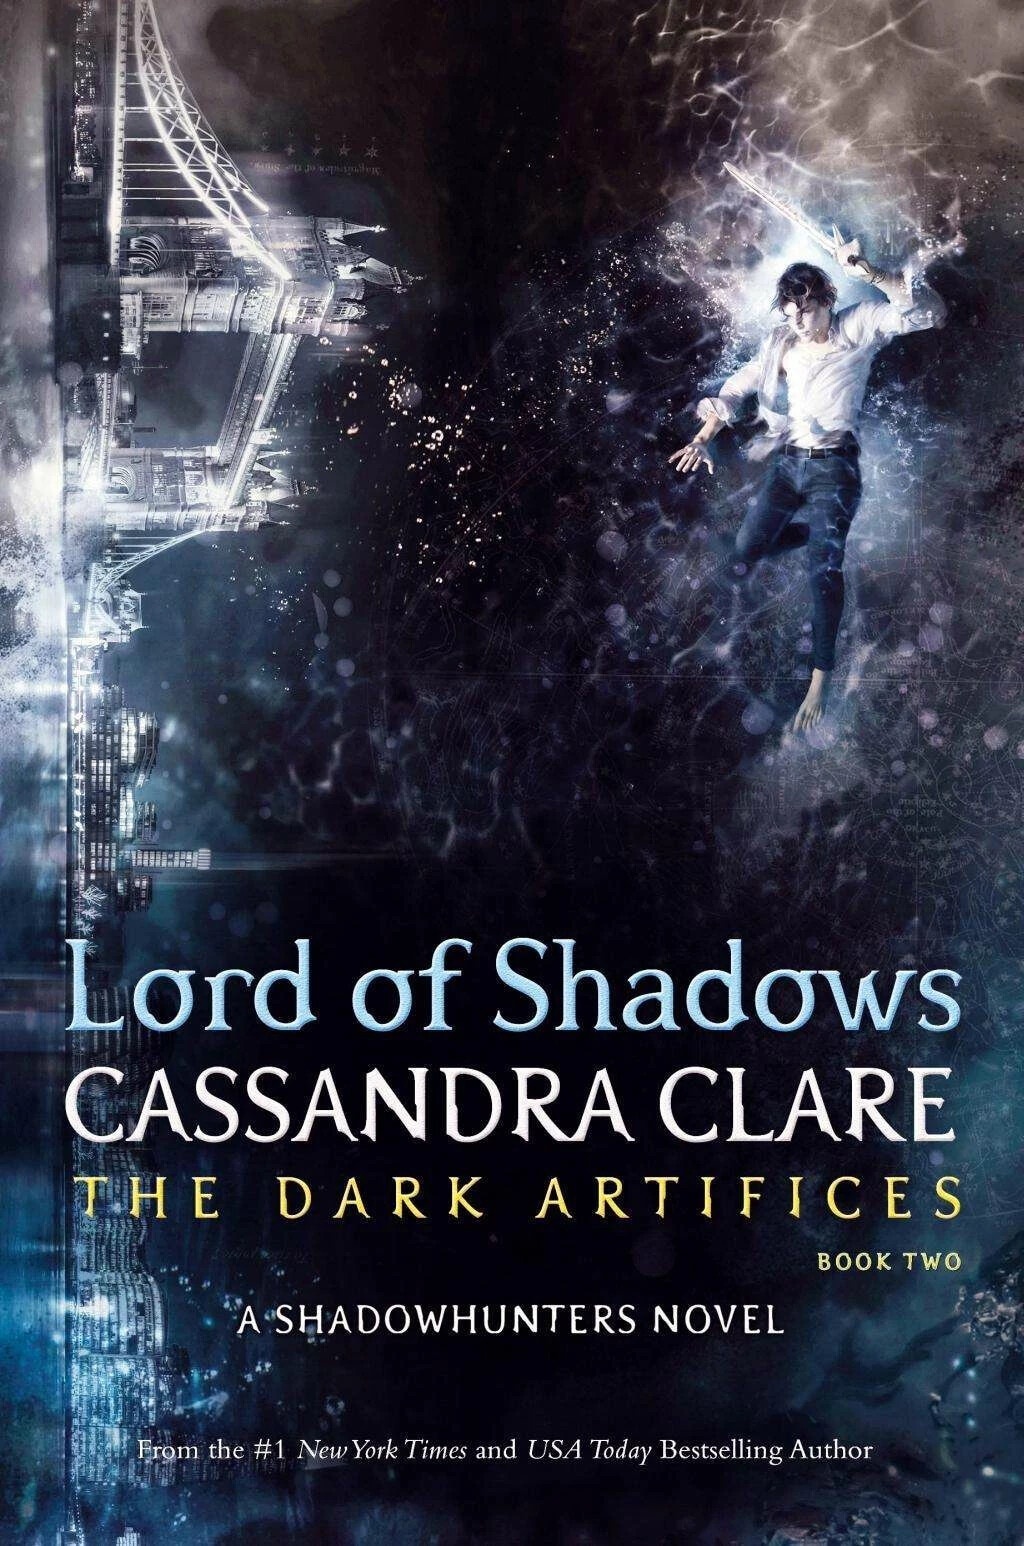 The Dark Artifices - Lord of Shadows, Kinderbücher von Cassandra Clare